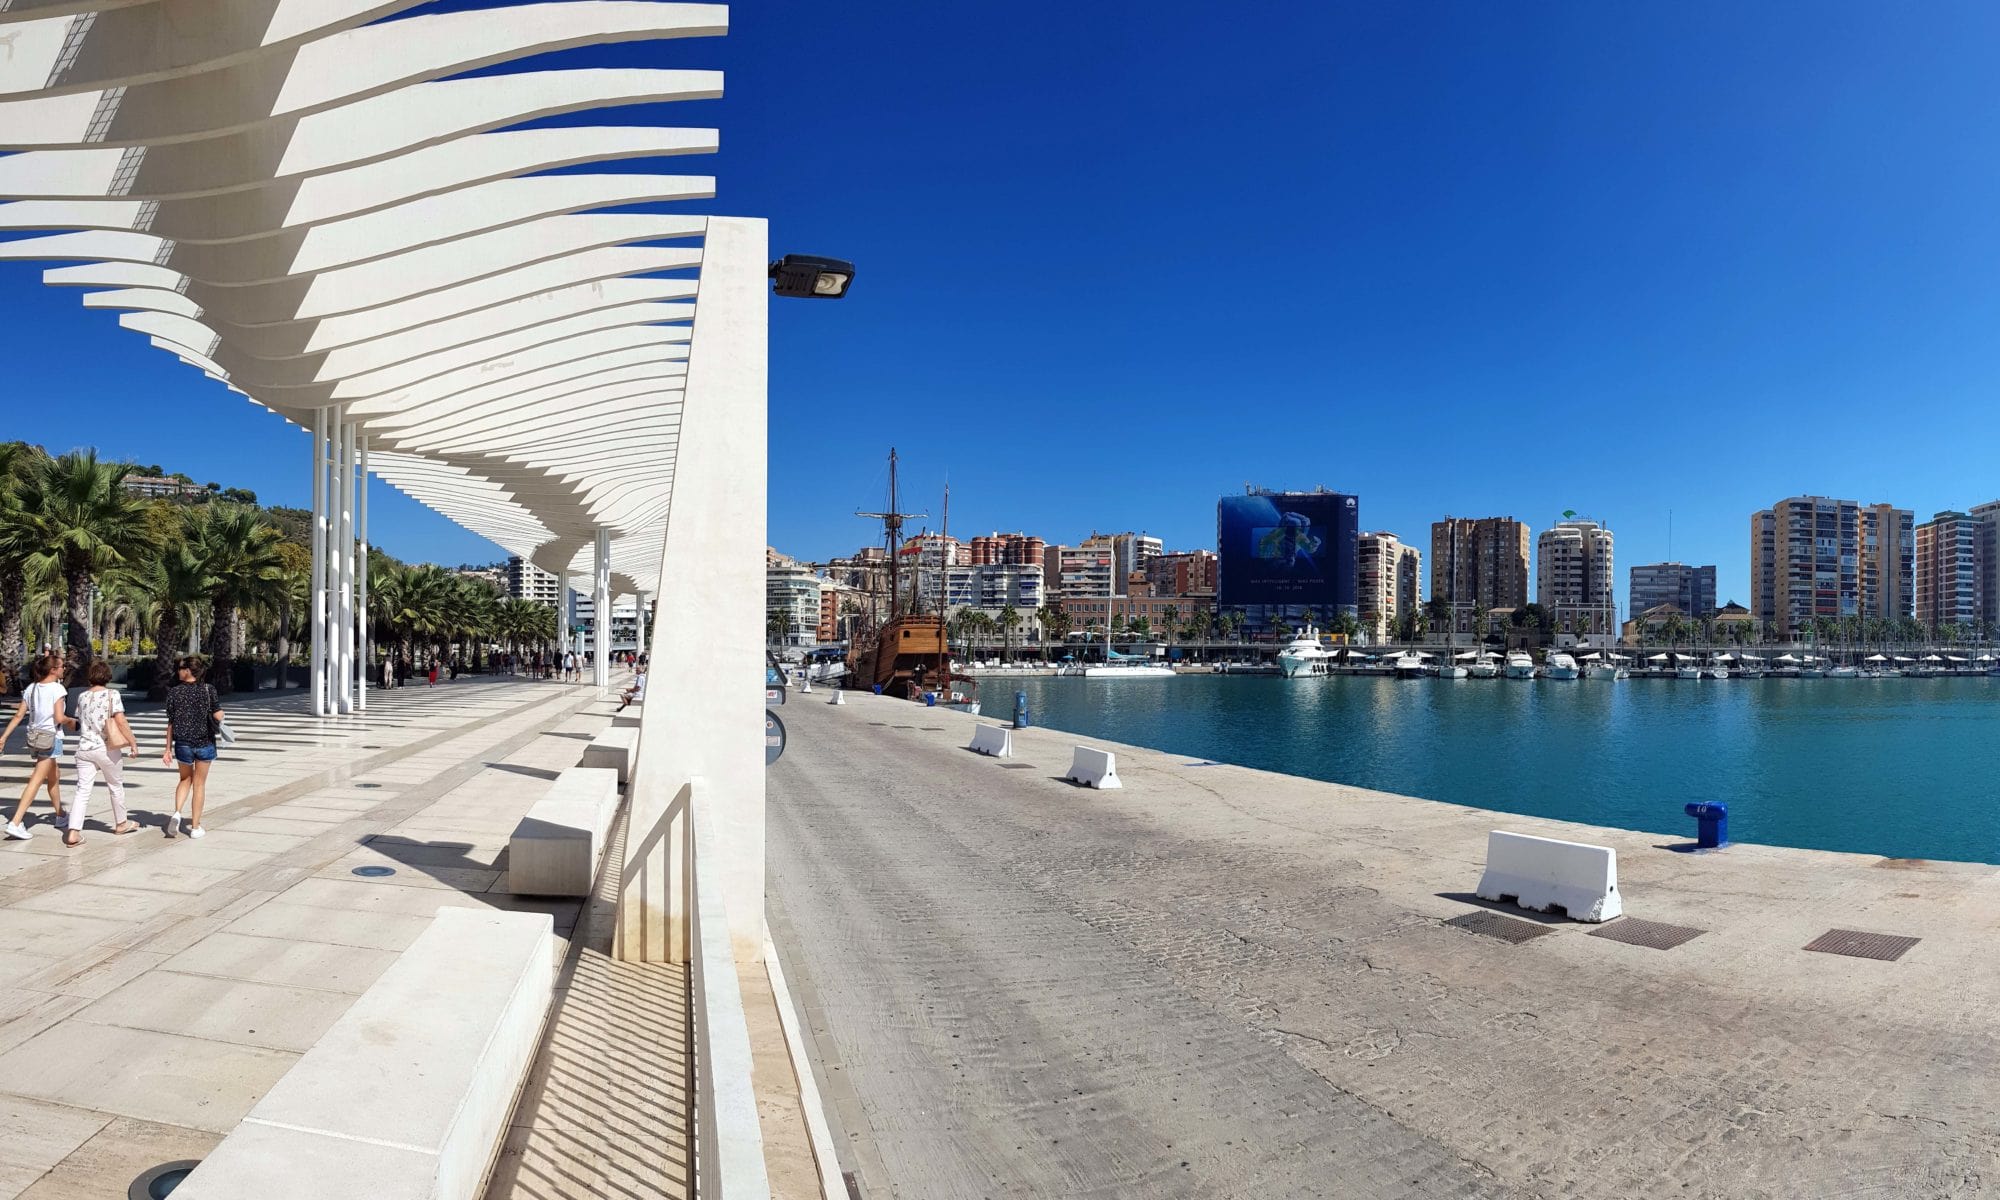 Sehenswürdigkeiten in Málaga: Top Museen, Plätze und Strände